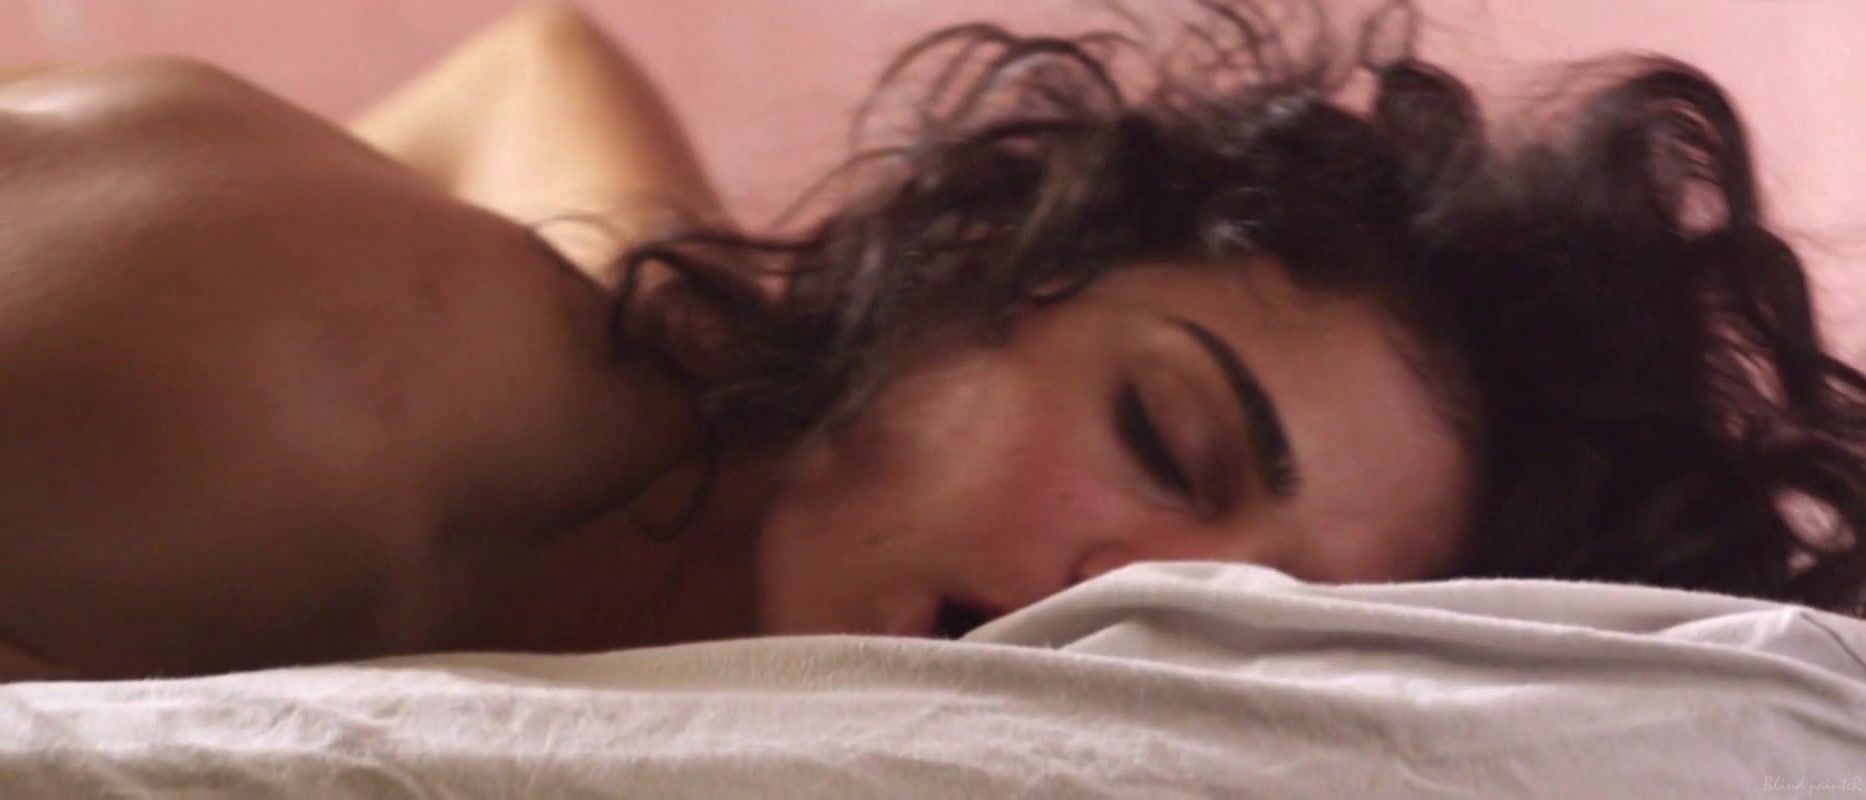 Real Orgasm Fabiola Buzim - Eu Queria Ser Arrebatada, Amordacada e, nas minhas costas, Tatuada (2015) Lesbian threesome